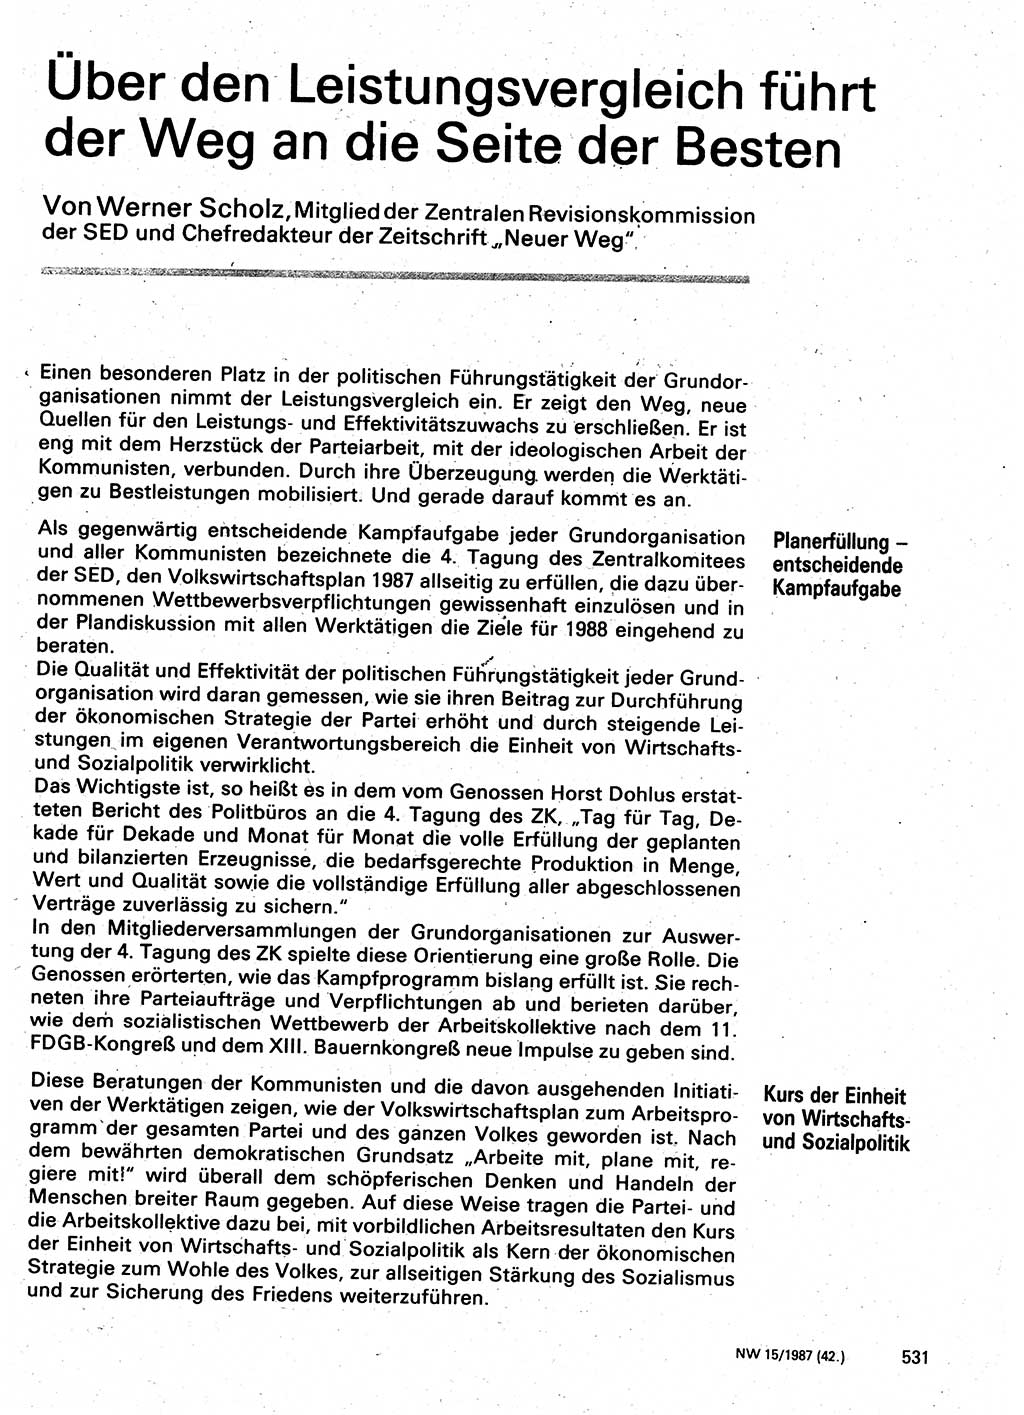 Neuer Weg (NW), Organ des Zentralkomitees (ZK) der SED (Sozialistische Einheitspartei Deutschlands) für Fragen des Parteilebens, 42. Jahrgang [Deutsche Demokratische Republik (DDR)] 1987, Seite 531 (NW ZK SED DDR 1987, S. 531)